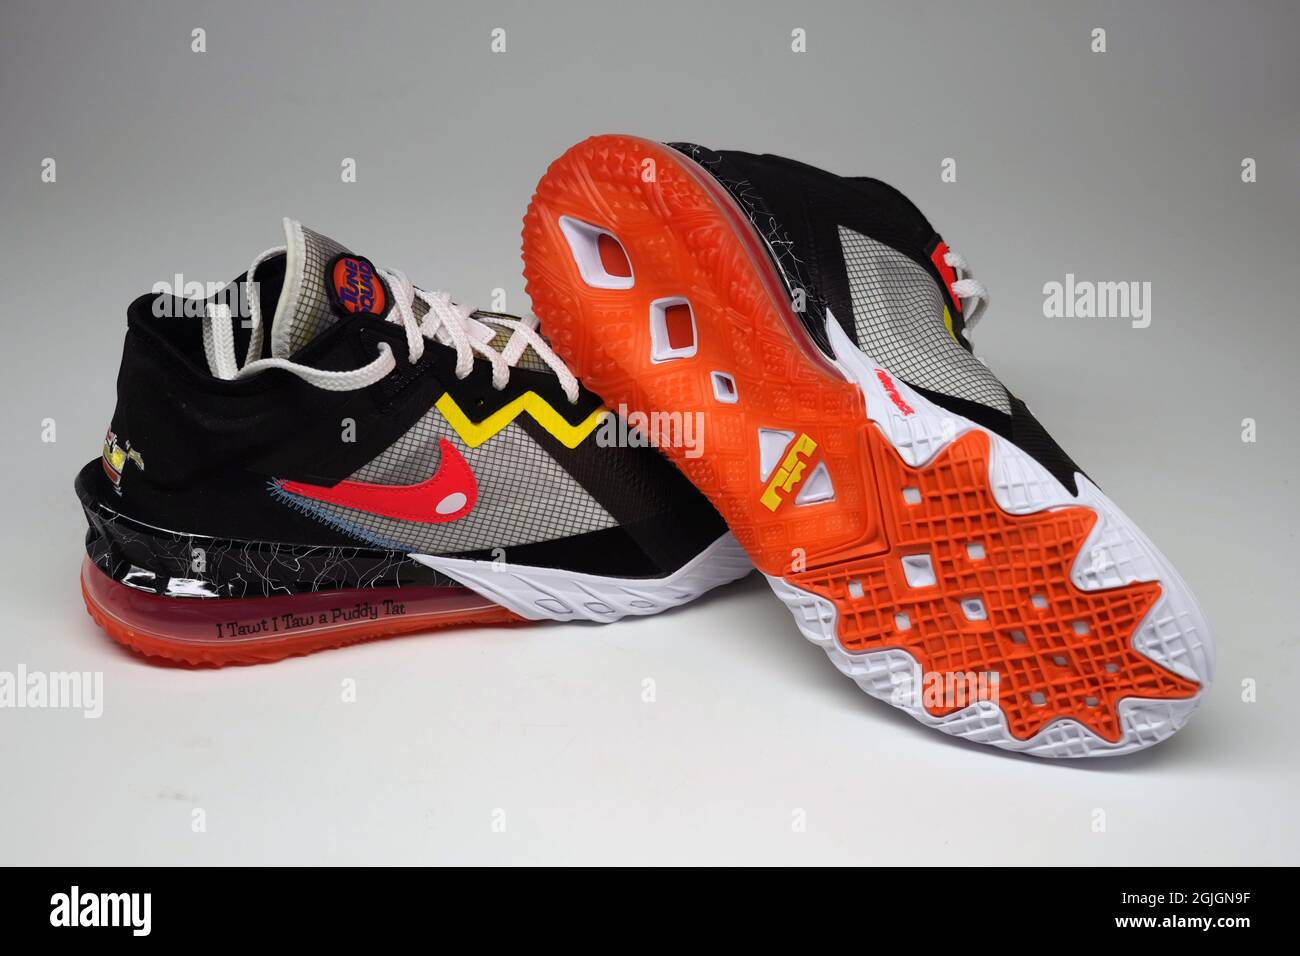 Vista detallada de zapatillas Nike 18 Low edición limitada Space Jam 2 de stock Alamy